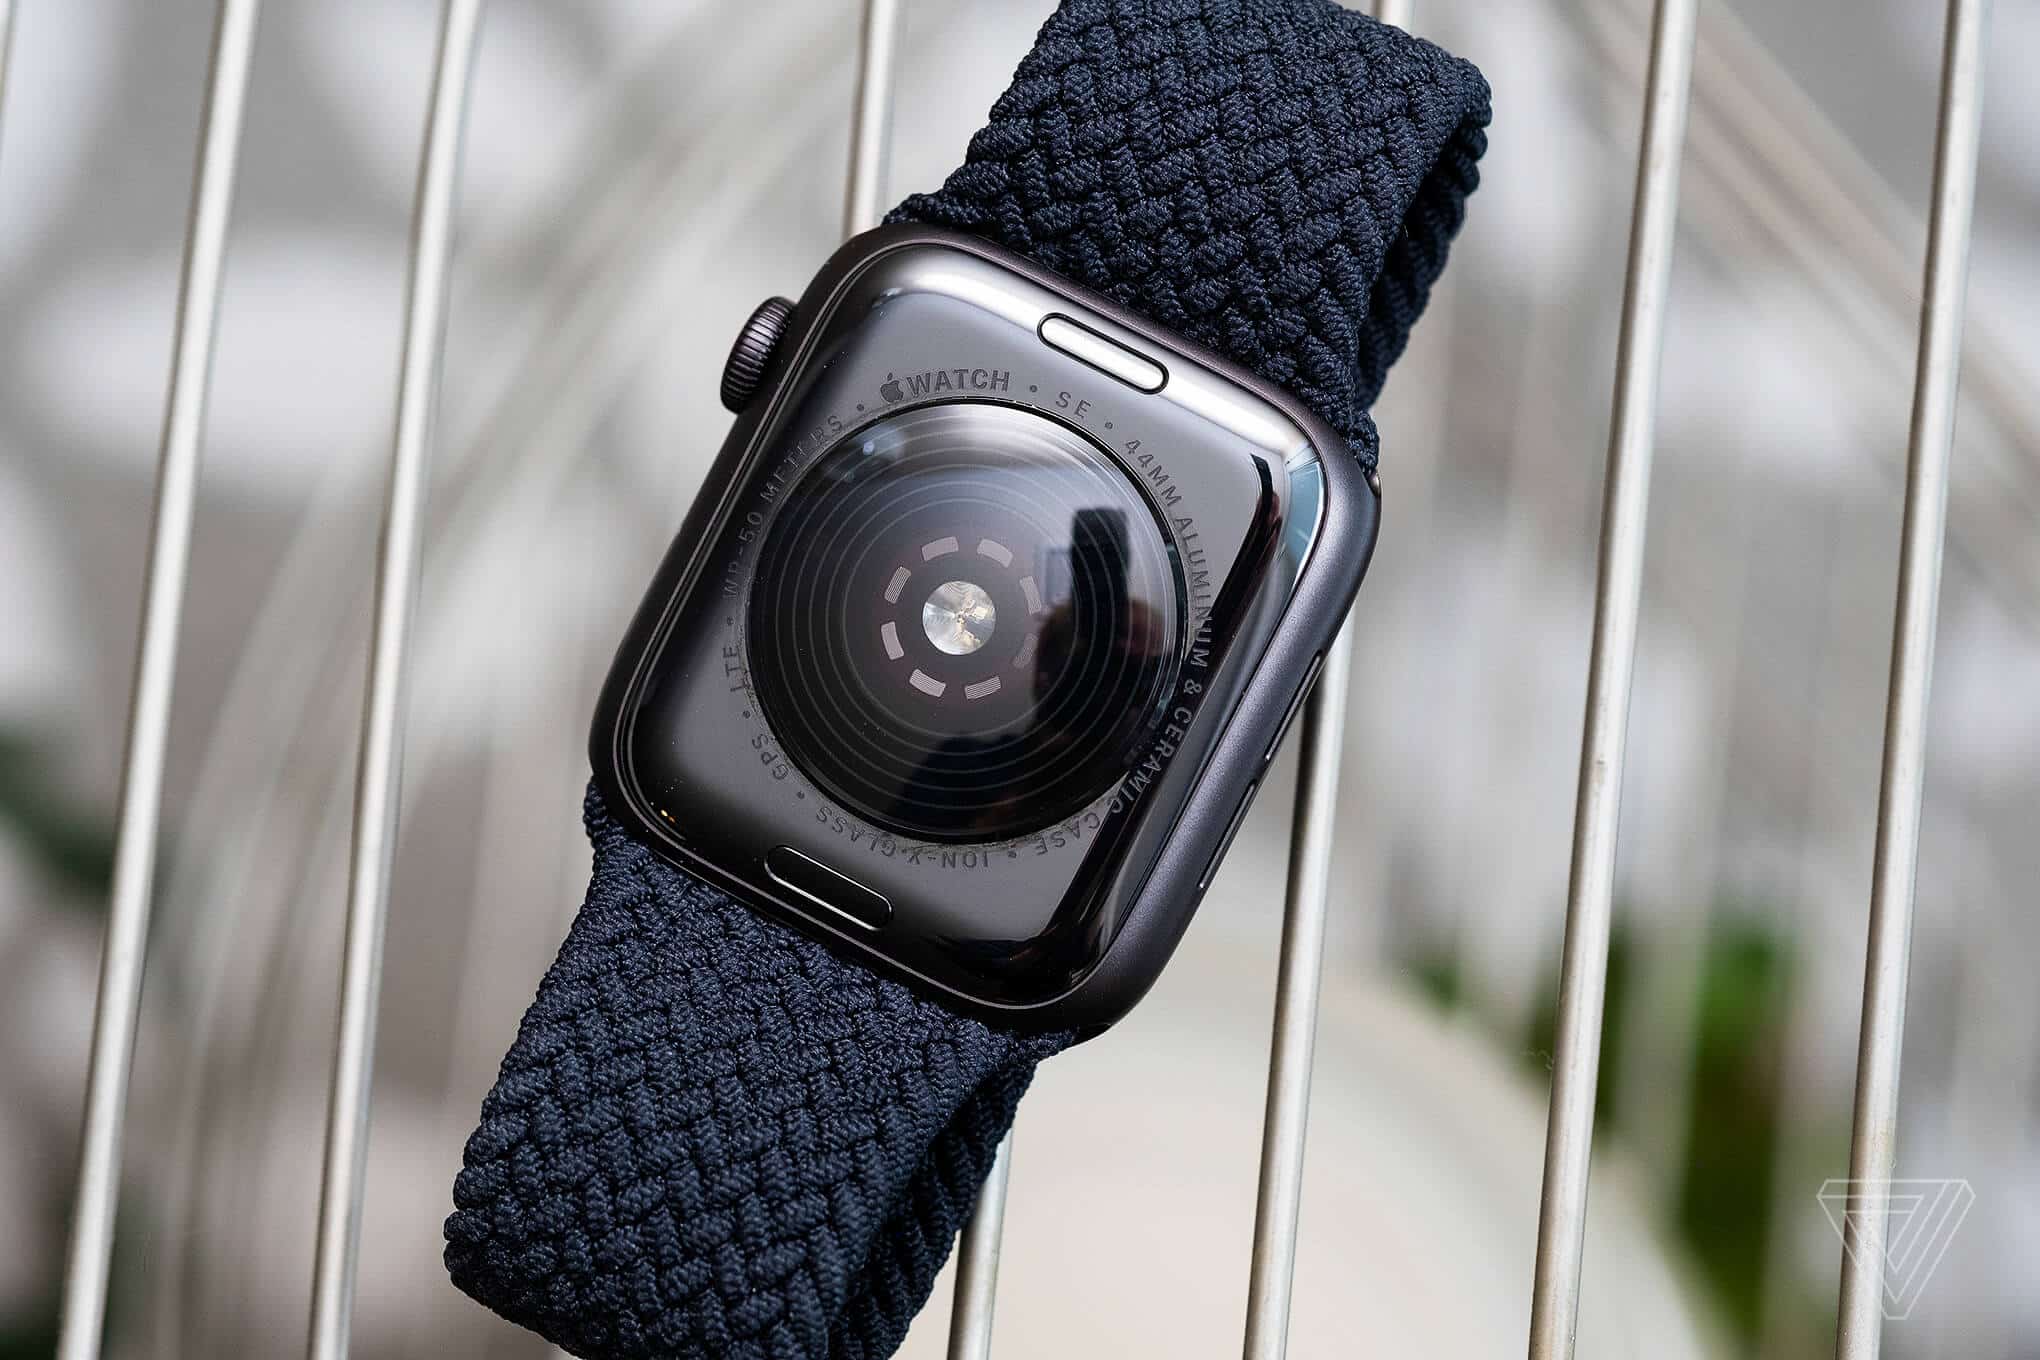 đồng hồ được trang bị Chip Apple S5 như phiên bản series 5